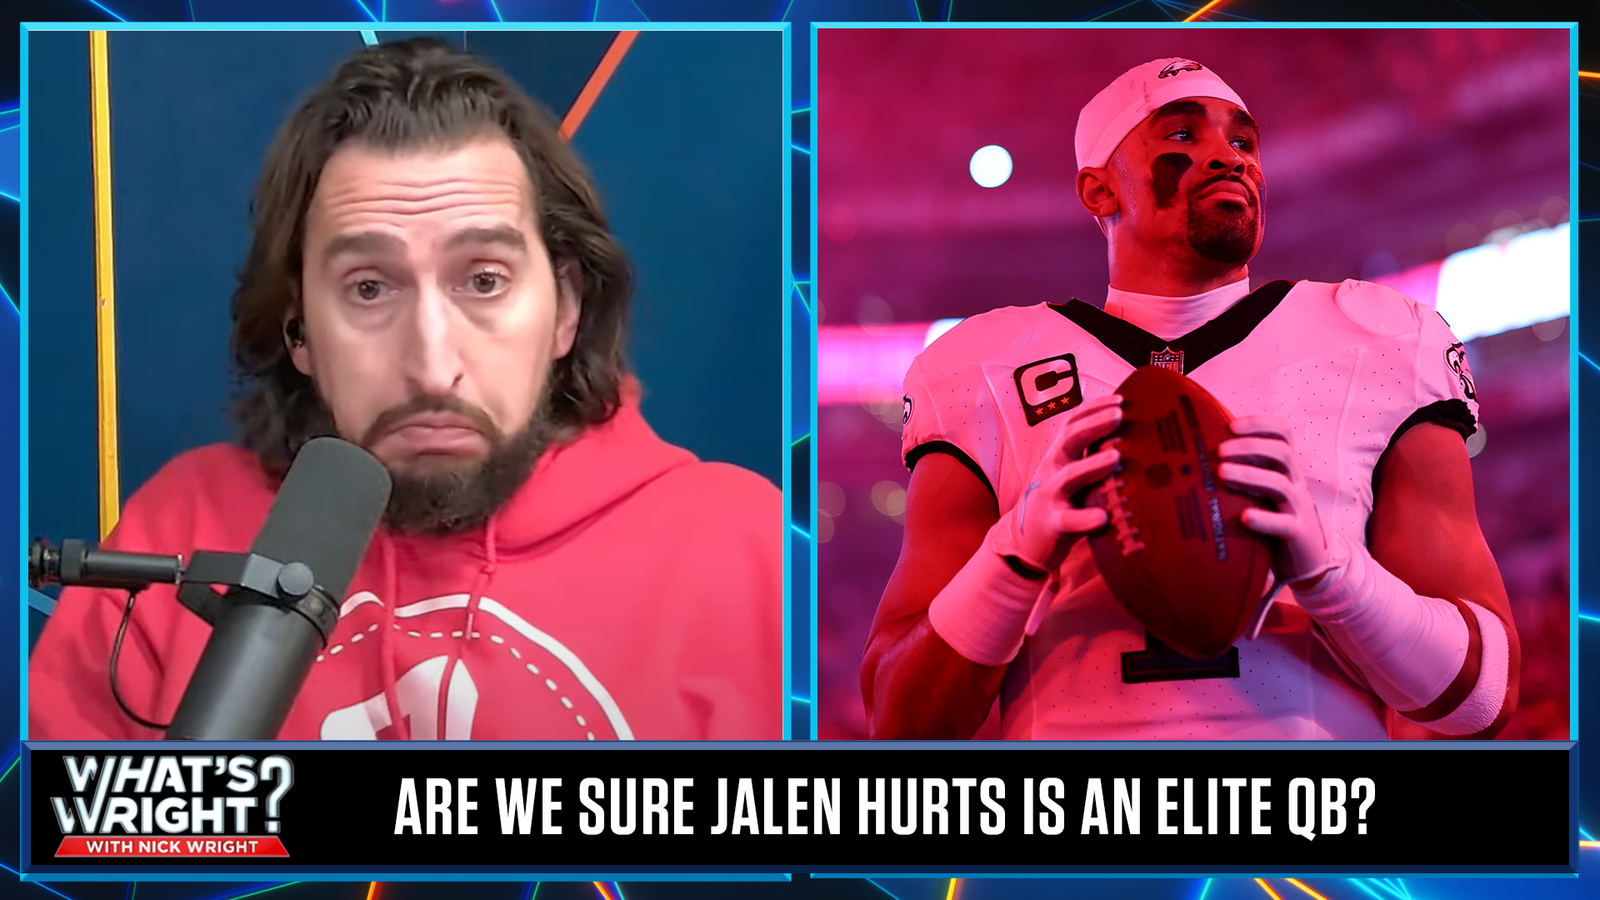 Is Jalen Hurts elite?